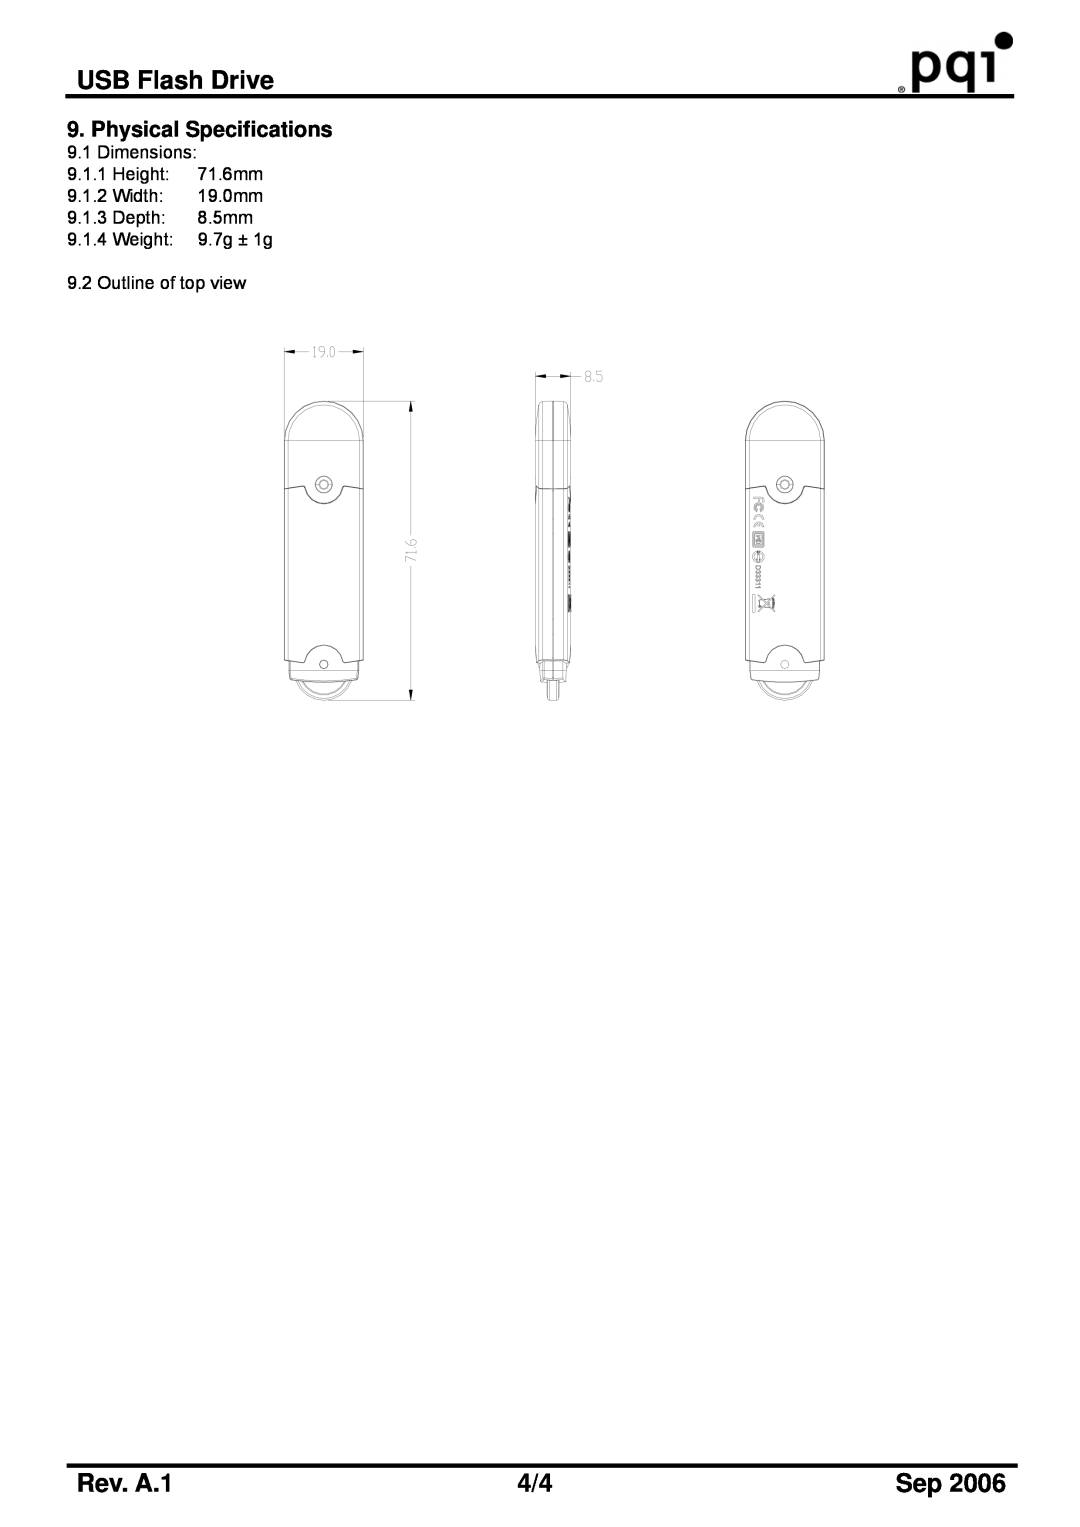 PQI U230 manual USB Flash Drive, Rev. A.1, Dimensions 9.1.1 Height 71.6mm 9.1.2 Width 19.0mm 